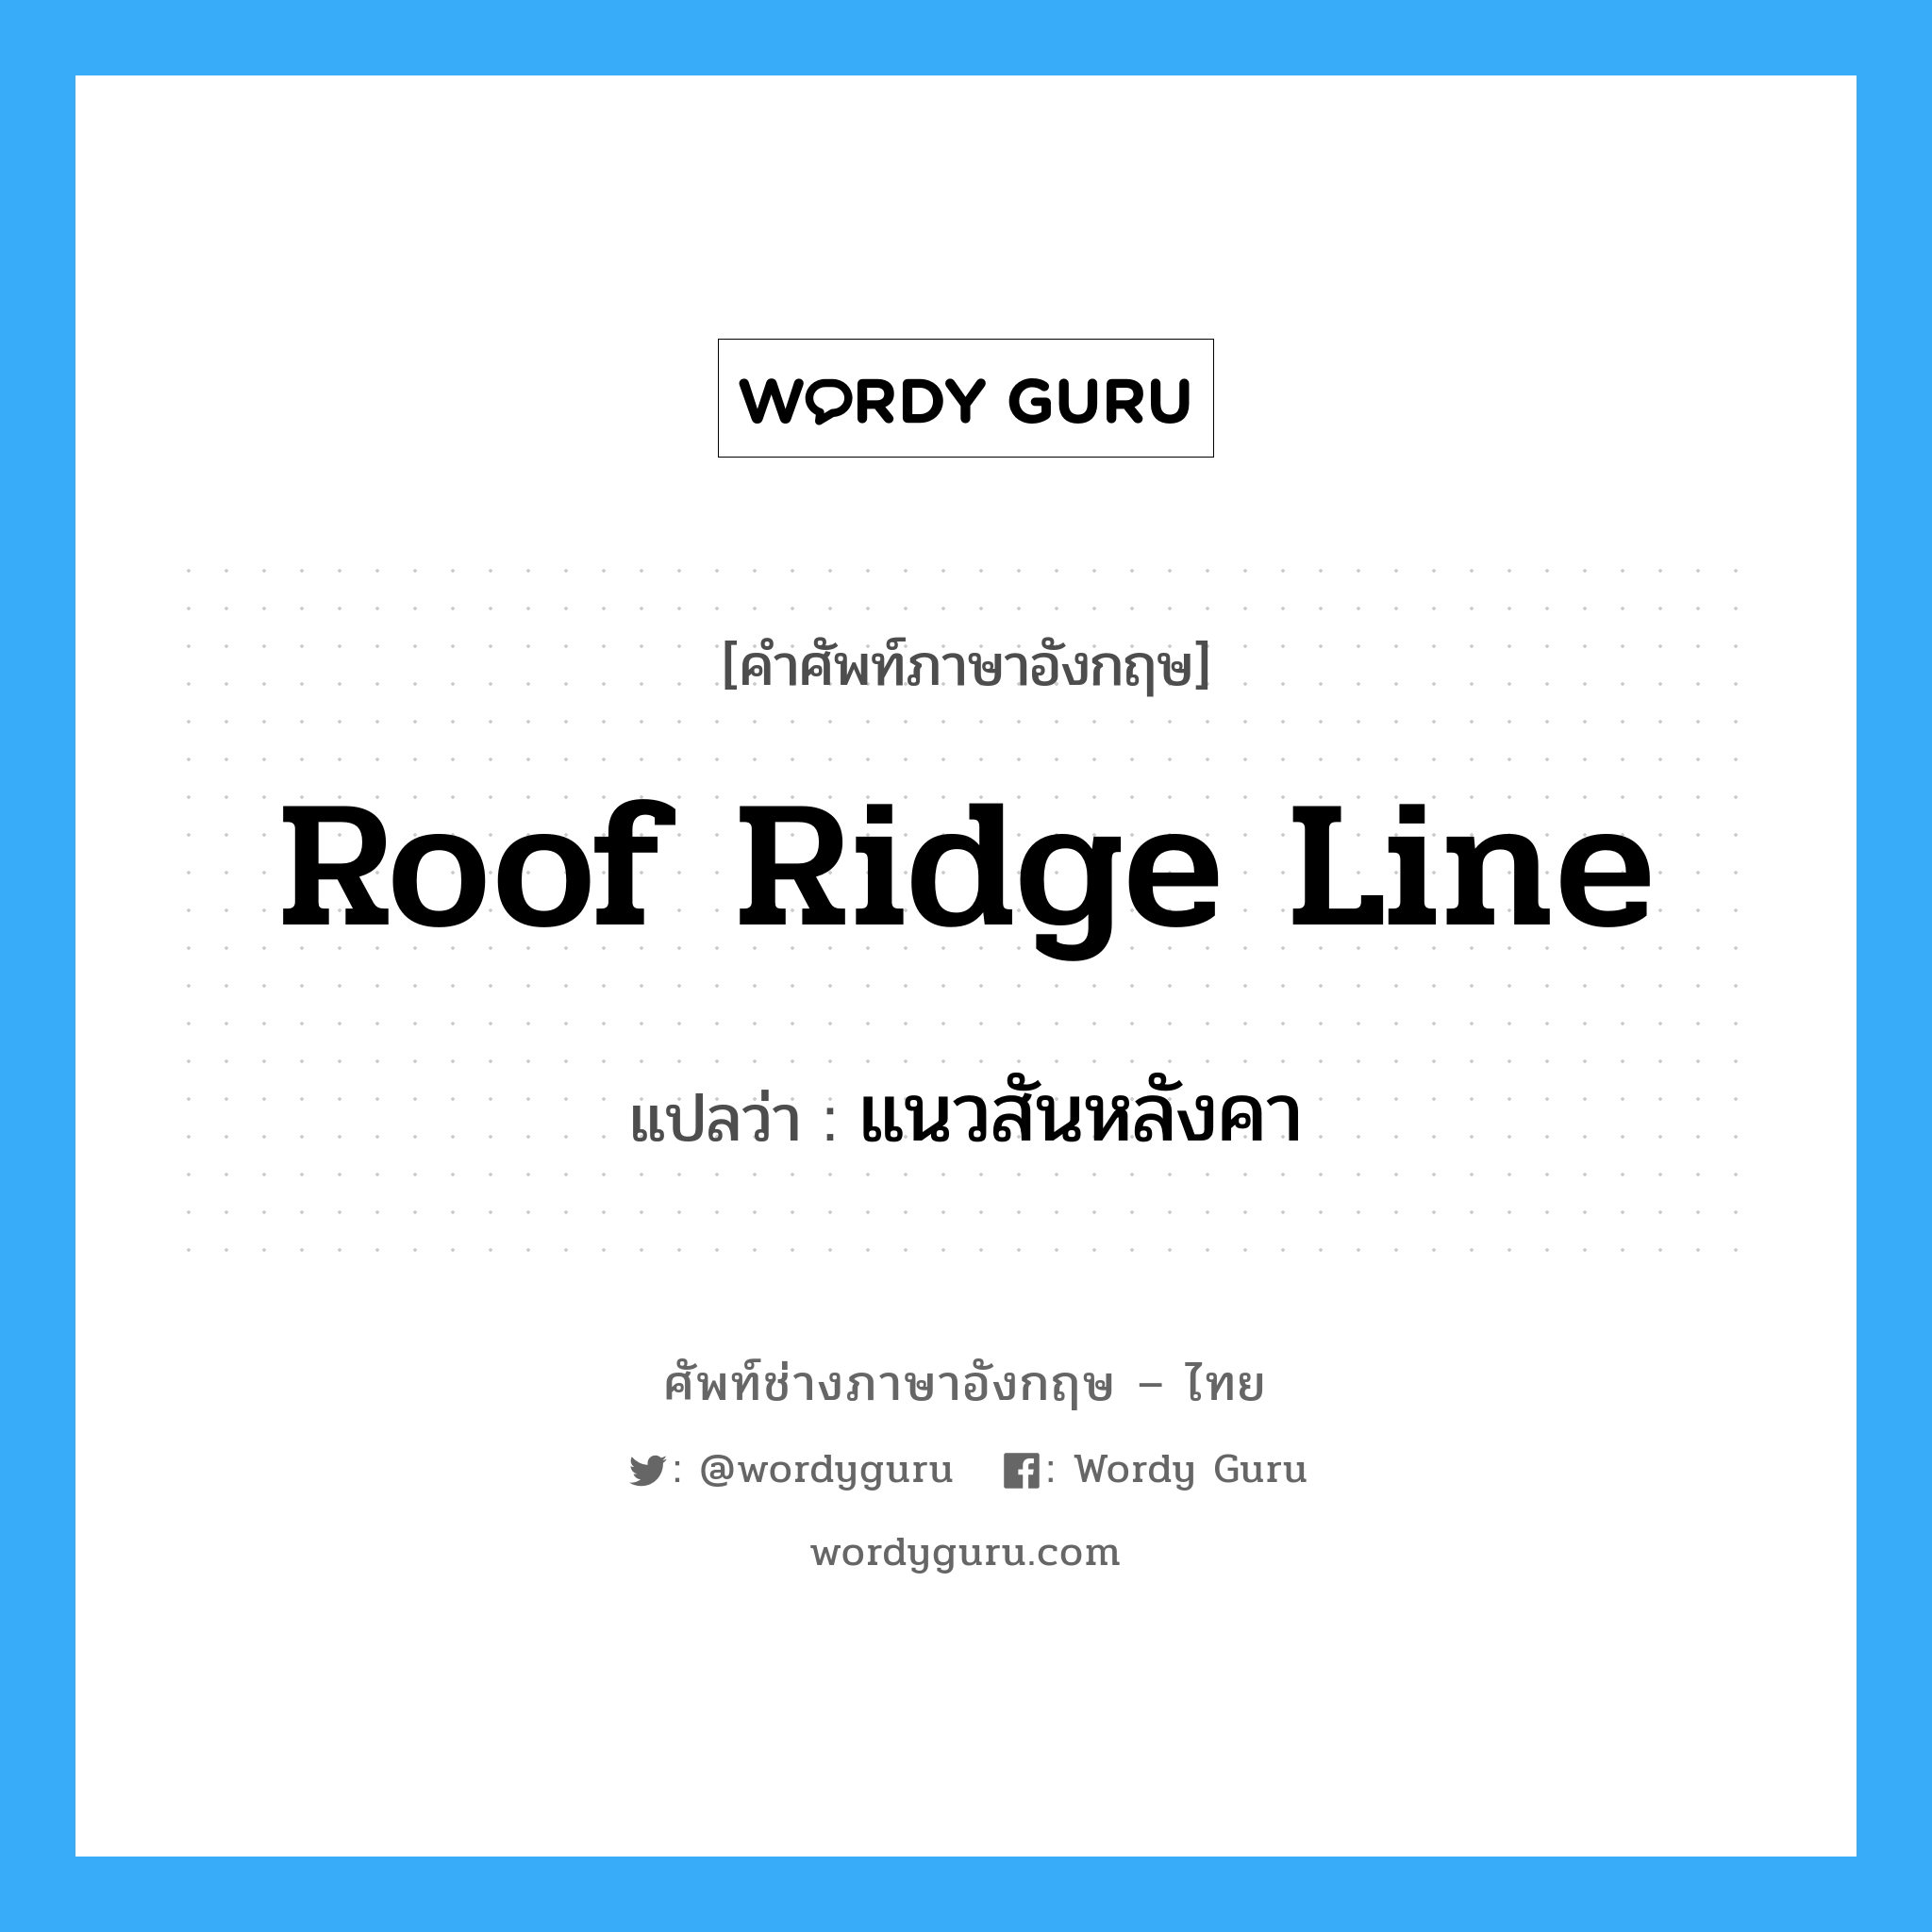 roof ridge line แปลว่า?, คำศัพท์ช่างภาษาอังกฤษ - ไทย roof ridge line คำศัพท์ภาษาอังกฤษ roof ridge line แปลว่า แนวสันหลังคา